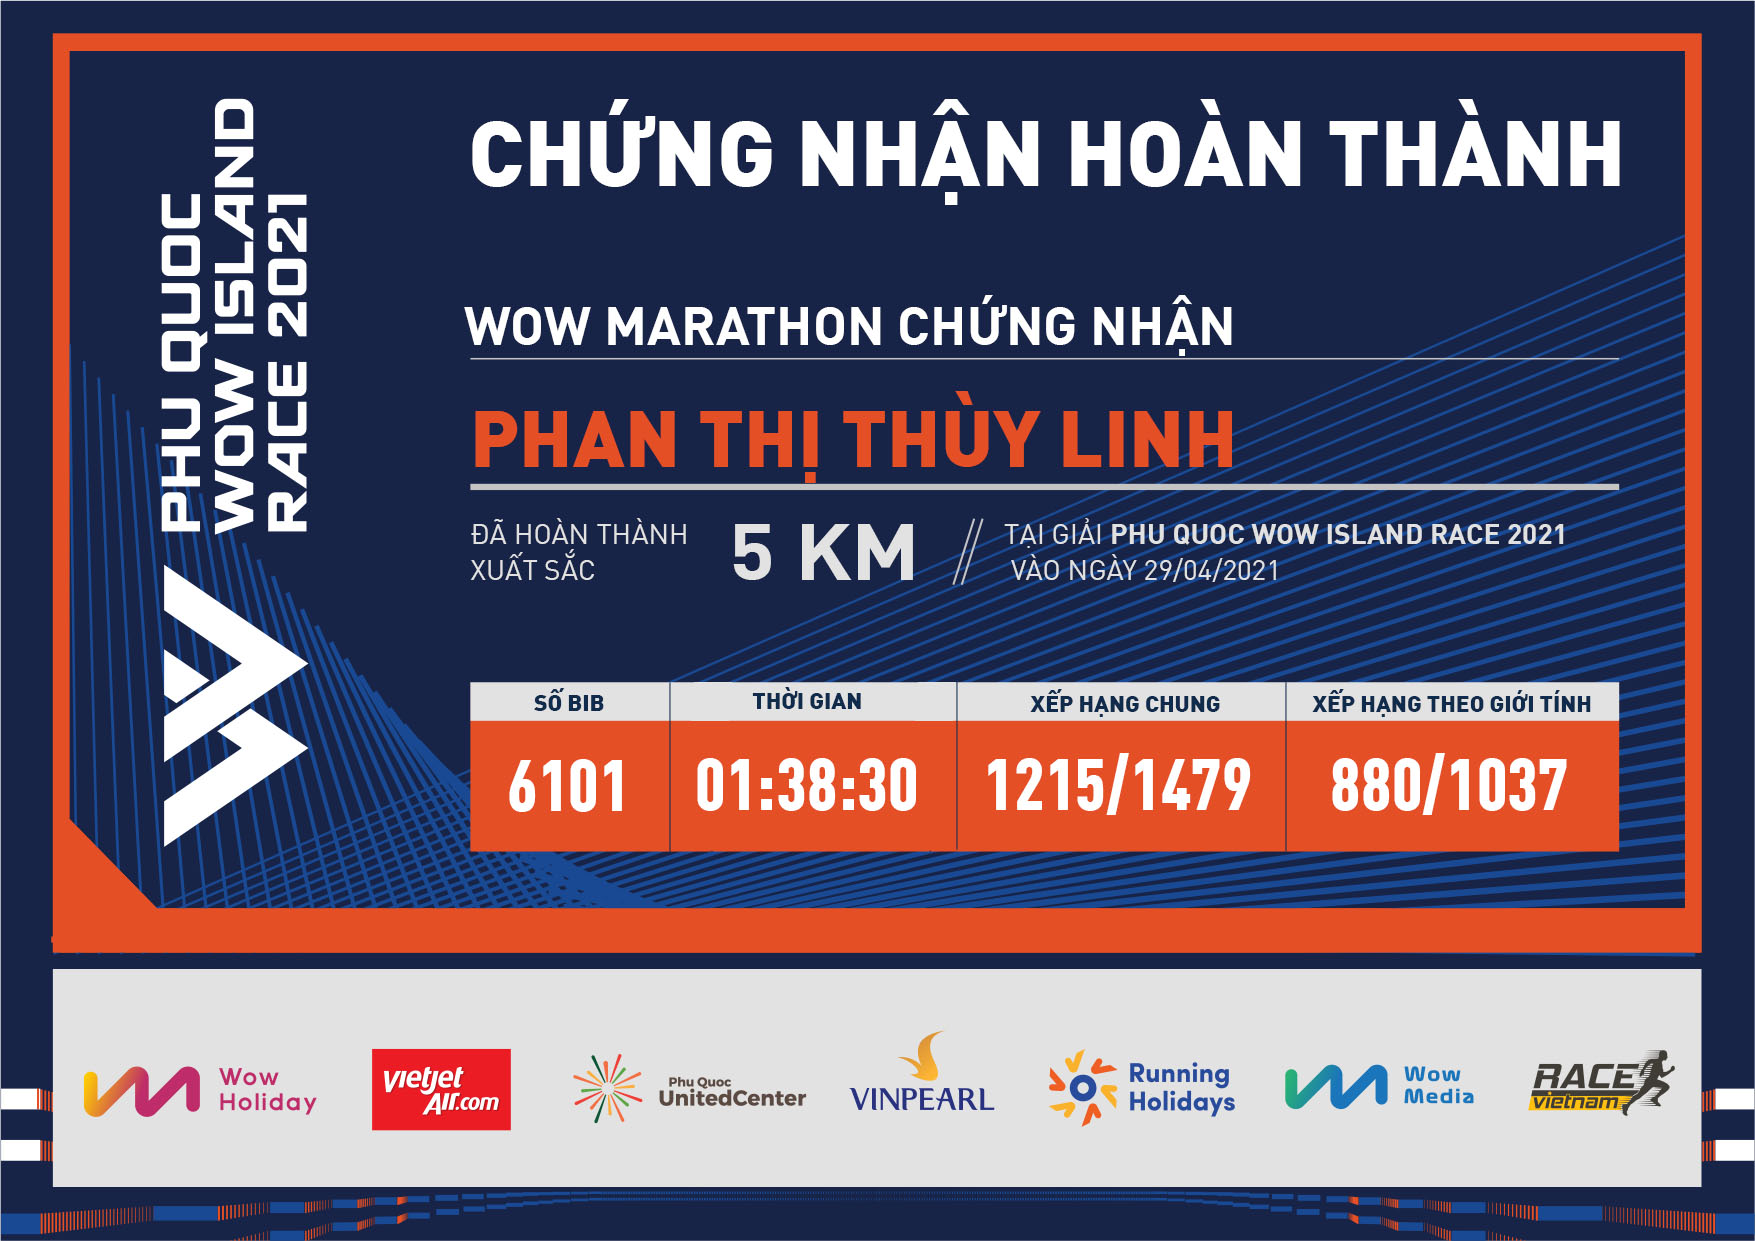 6101 - Phan Thị Thùy Linh